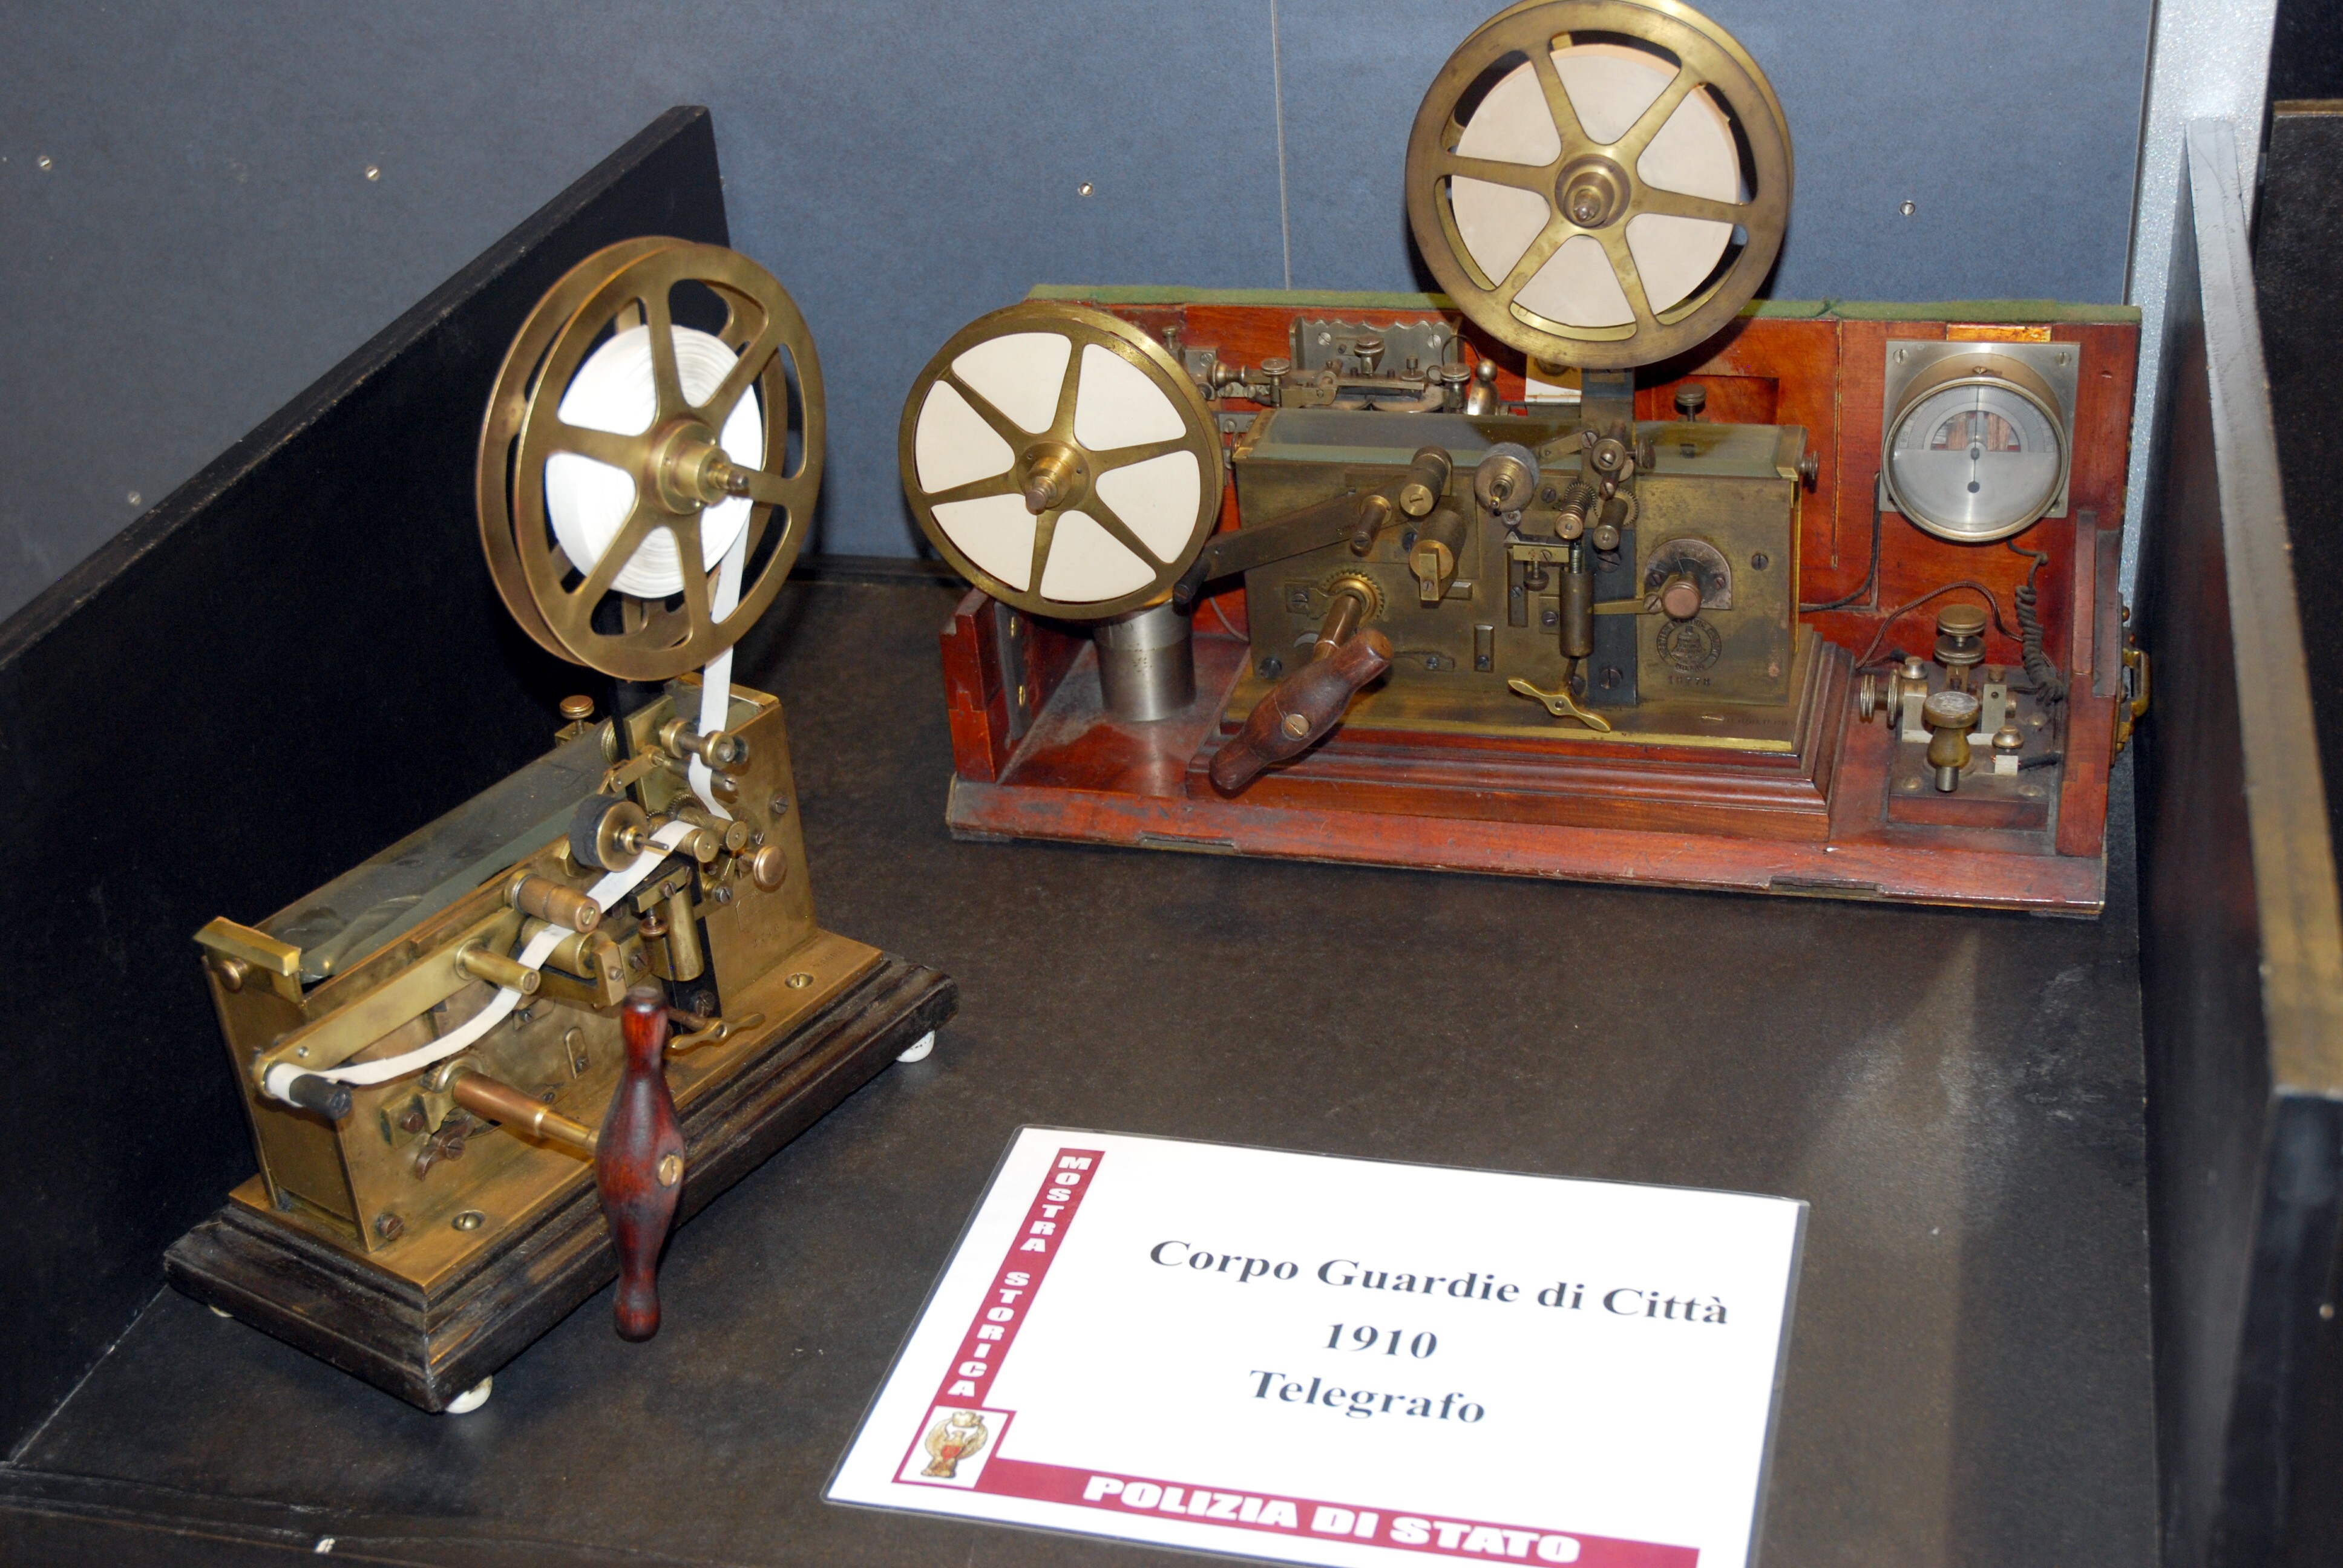 Dal telegrafo alle ricetrasmittenti, gli strumenti utilizzati dalla Polizia dal 1910-1965